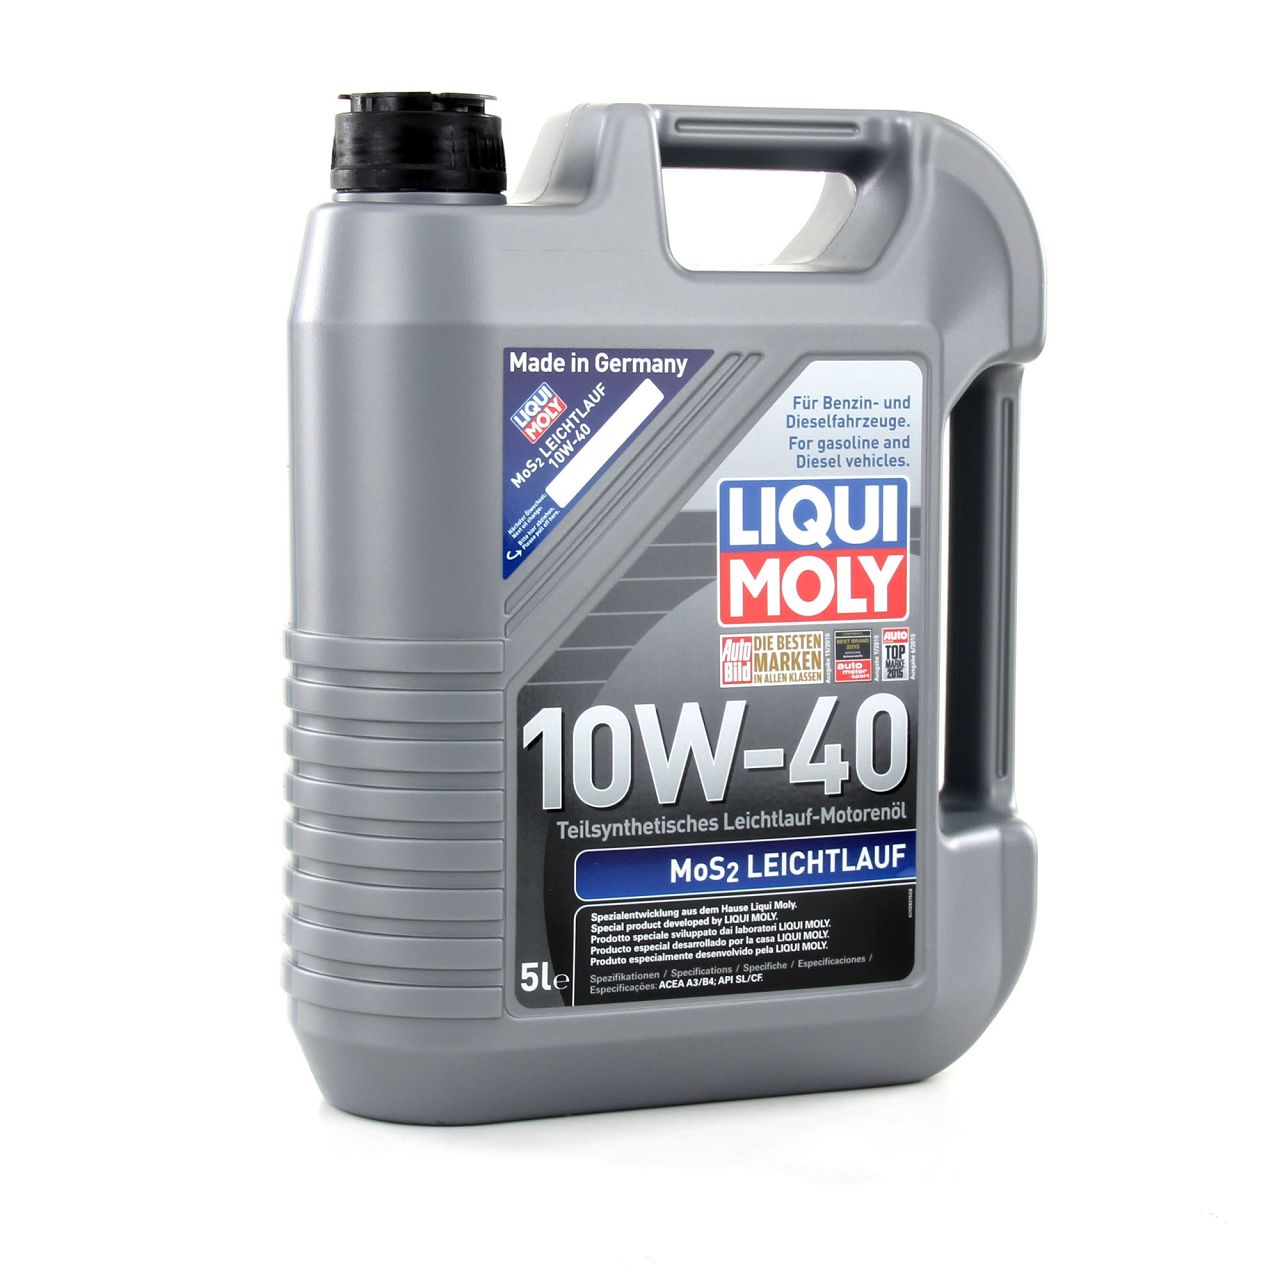 5L LIQUI MOLY 1092 MoS2 LEICHTLAUF 10W-40 10W40 Motoröl Öl ACEA A3/B4 API SL/CF